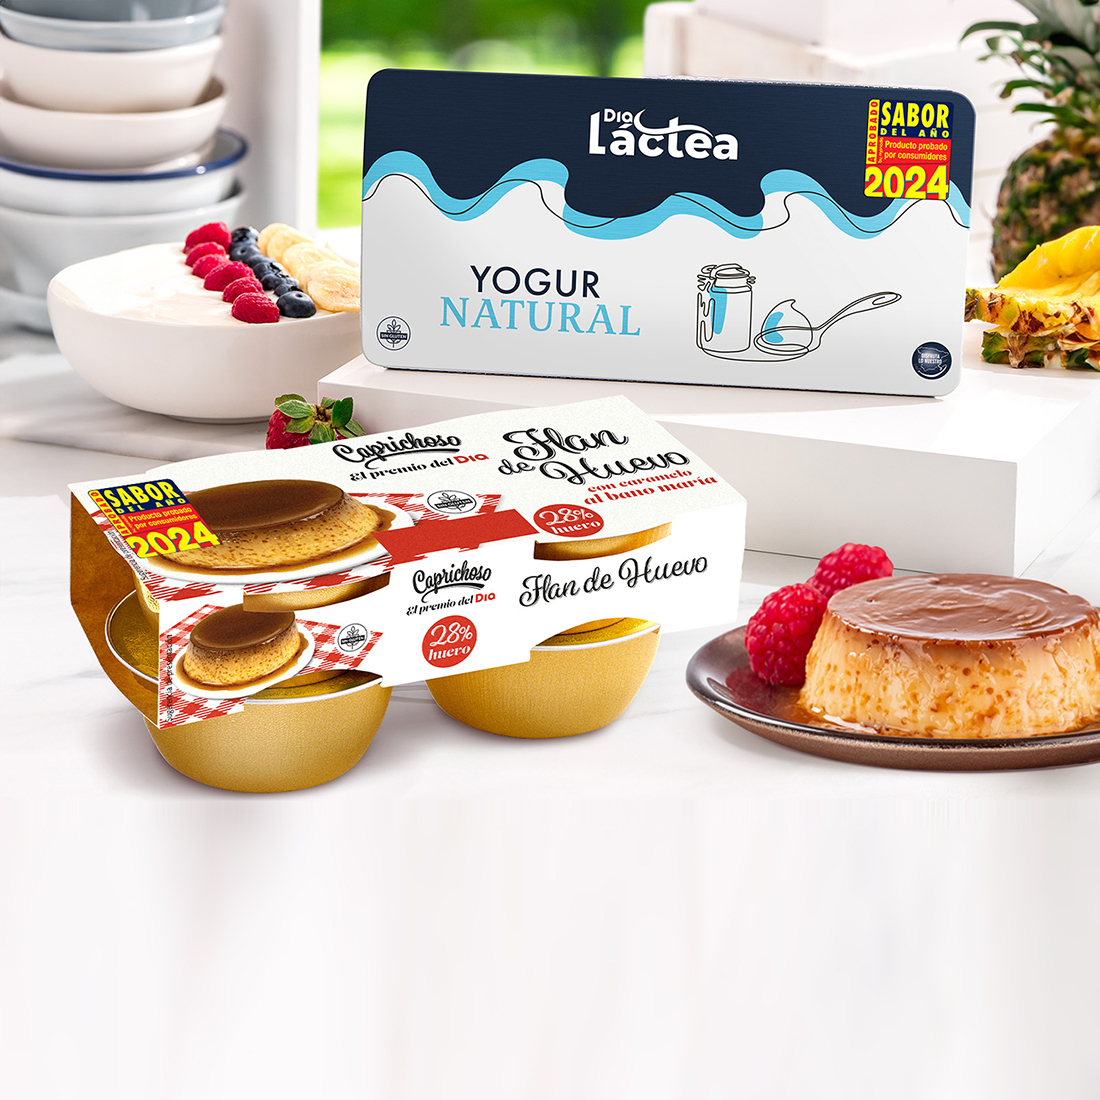 El “Flan de Huevo Caprichoso, el premio del día” y el “Yogur Natural Dia Láctea”, premiados con el sello Sabor del Año 2024 por los consumidores